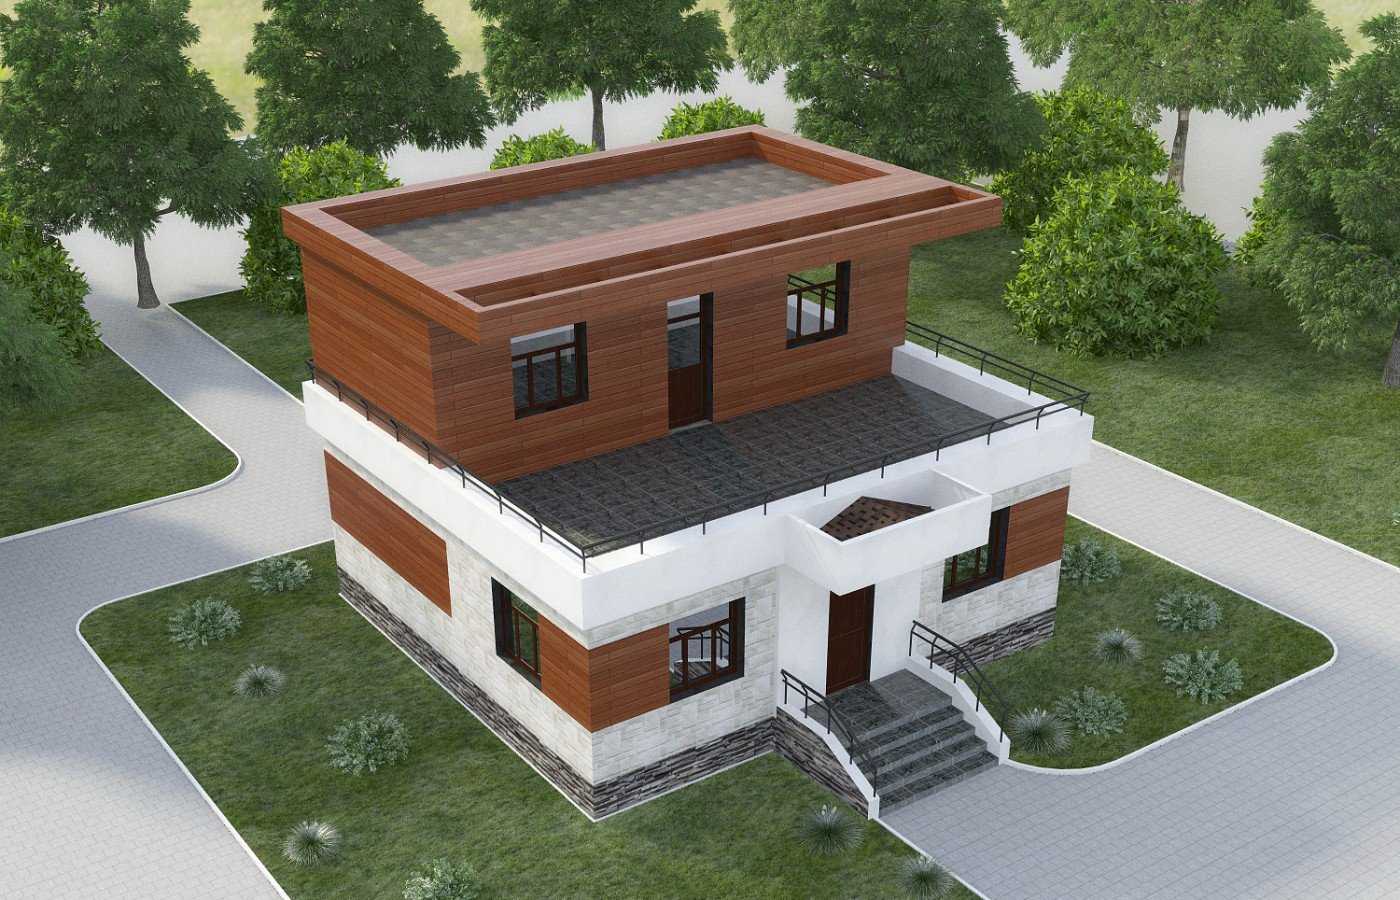 Крыша каркасного дома: особенности, правила и расчет конструкции